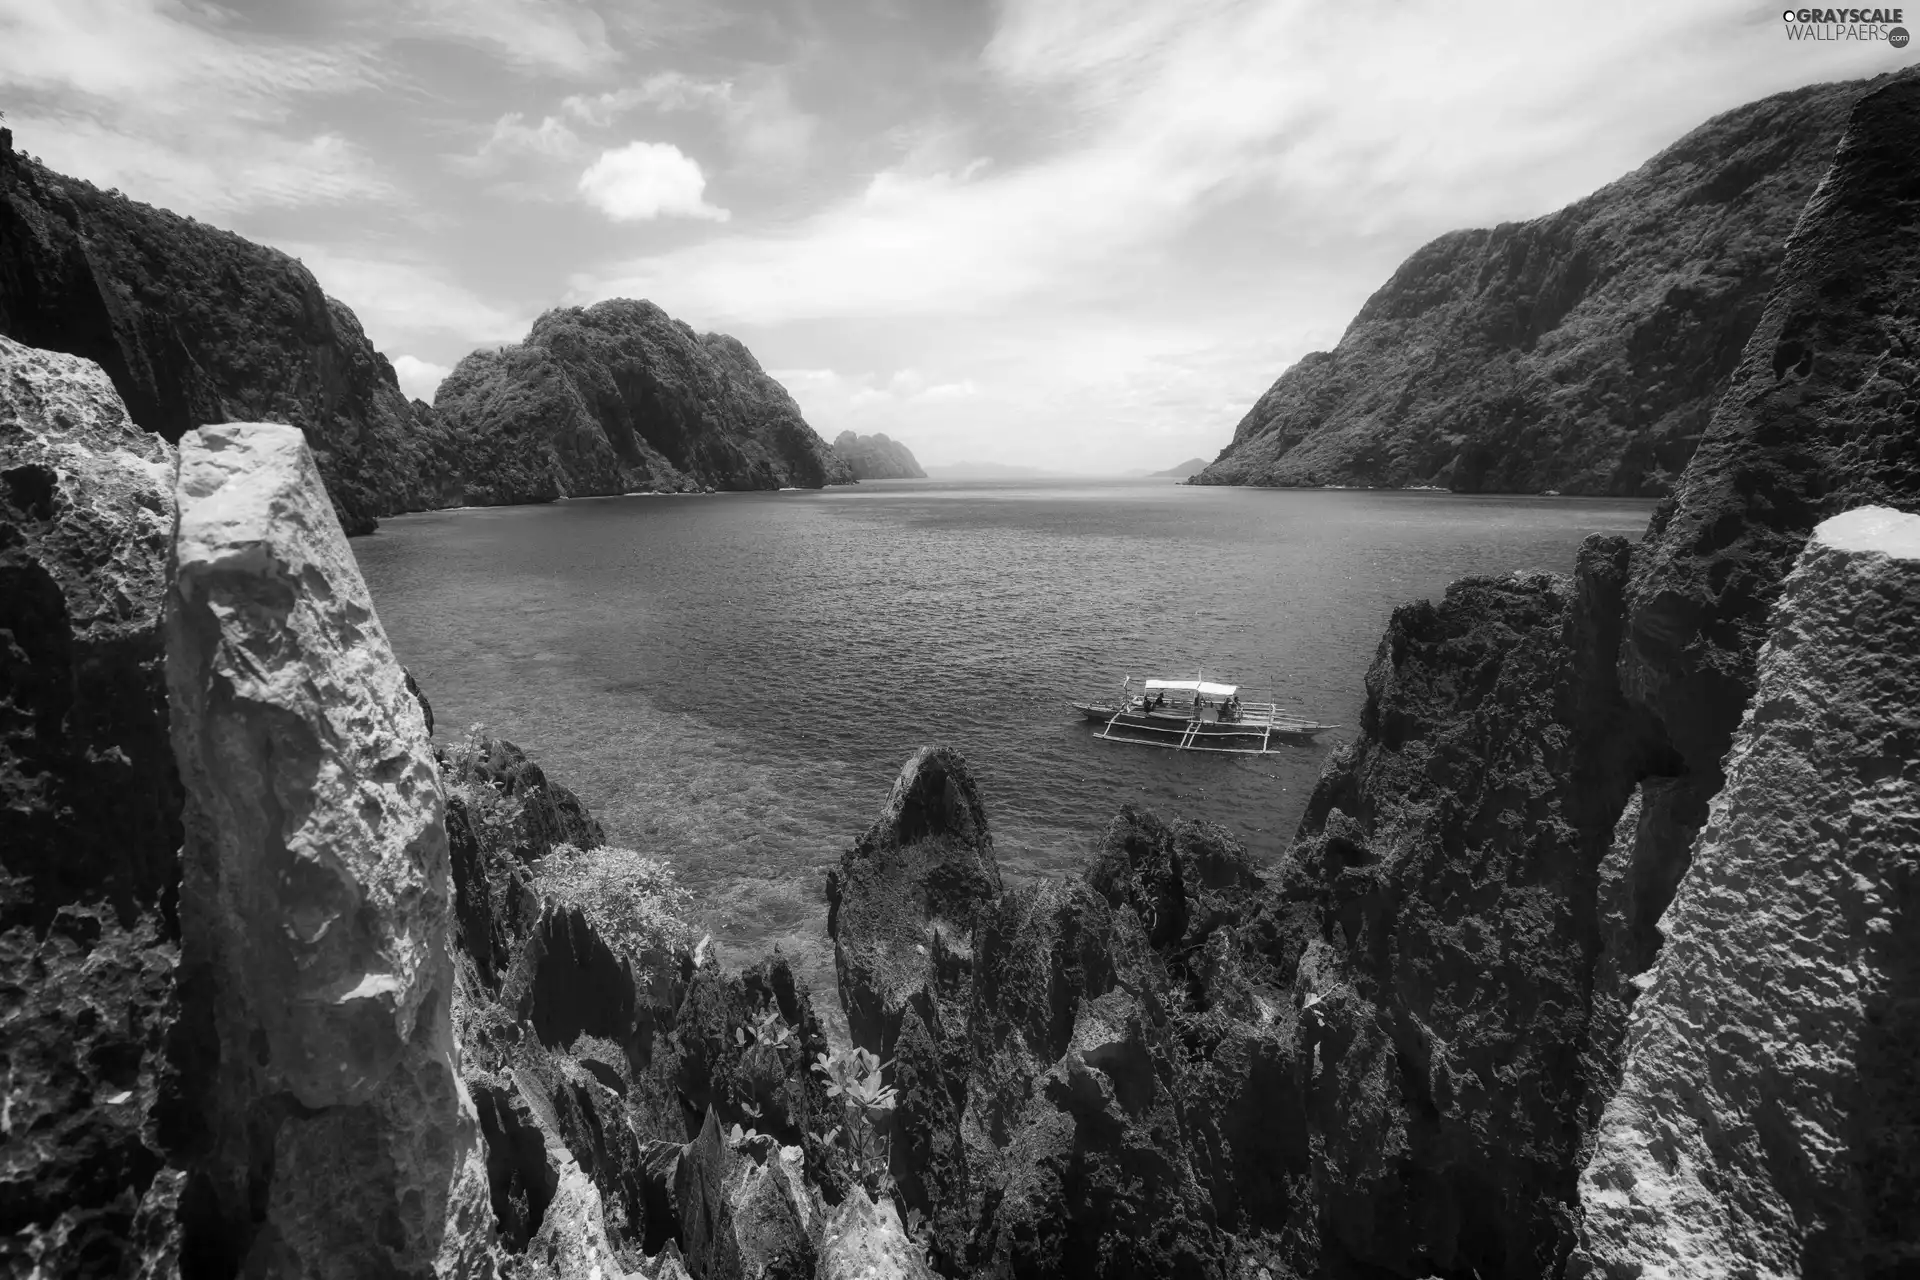 rocks, sea, Palawan, Mountains, Boat, El Nido, Philippines